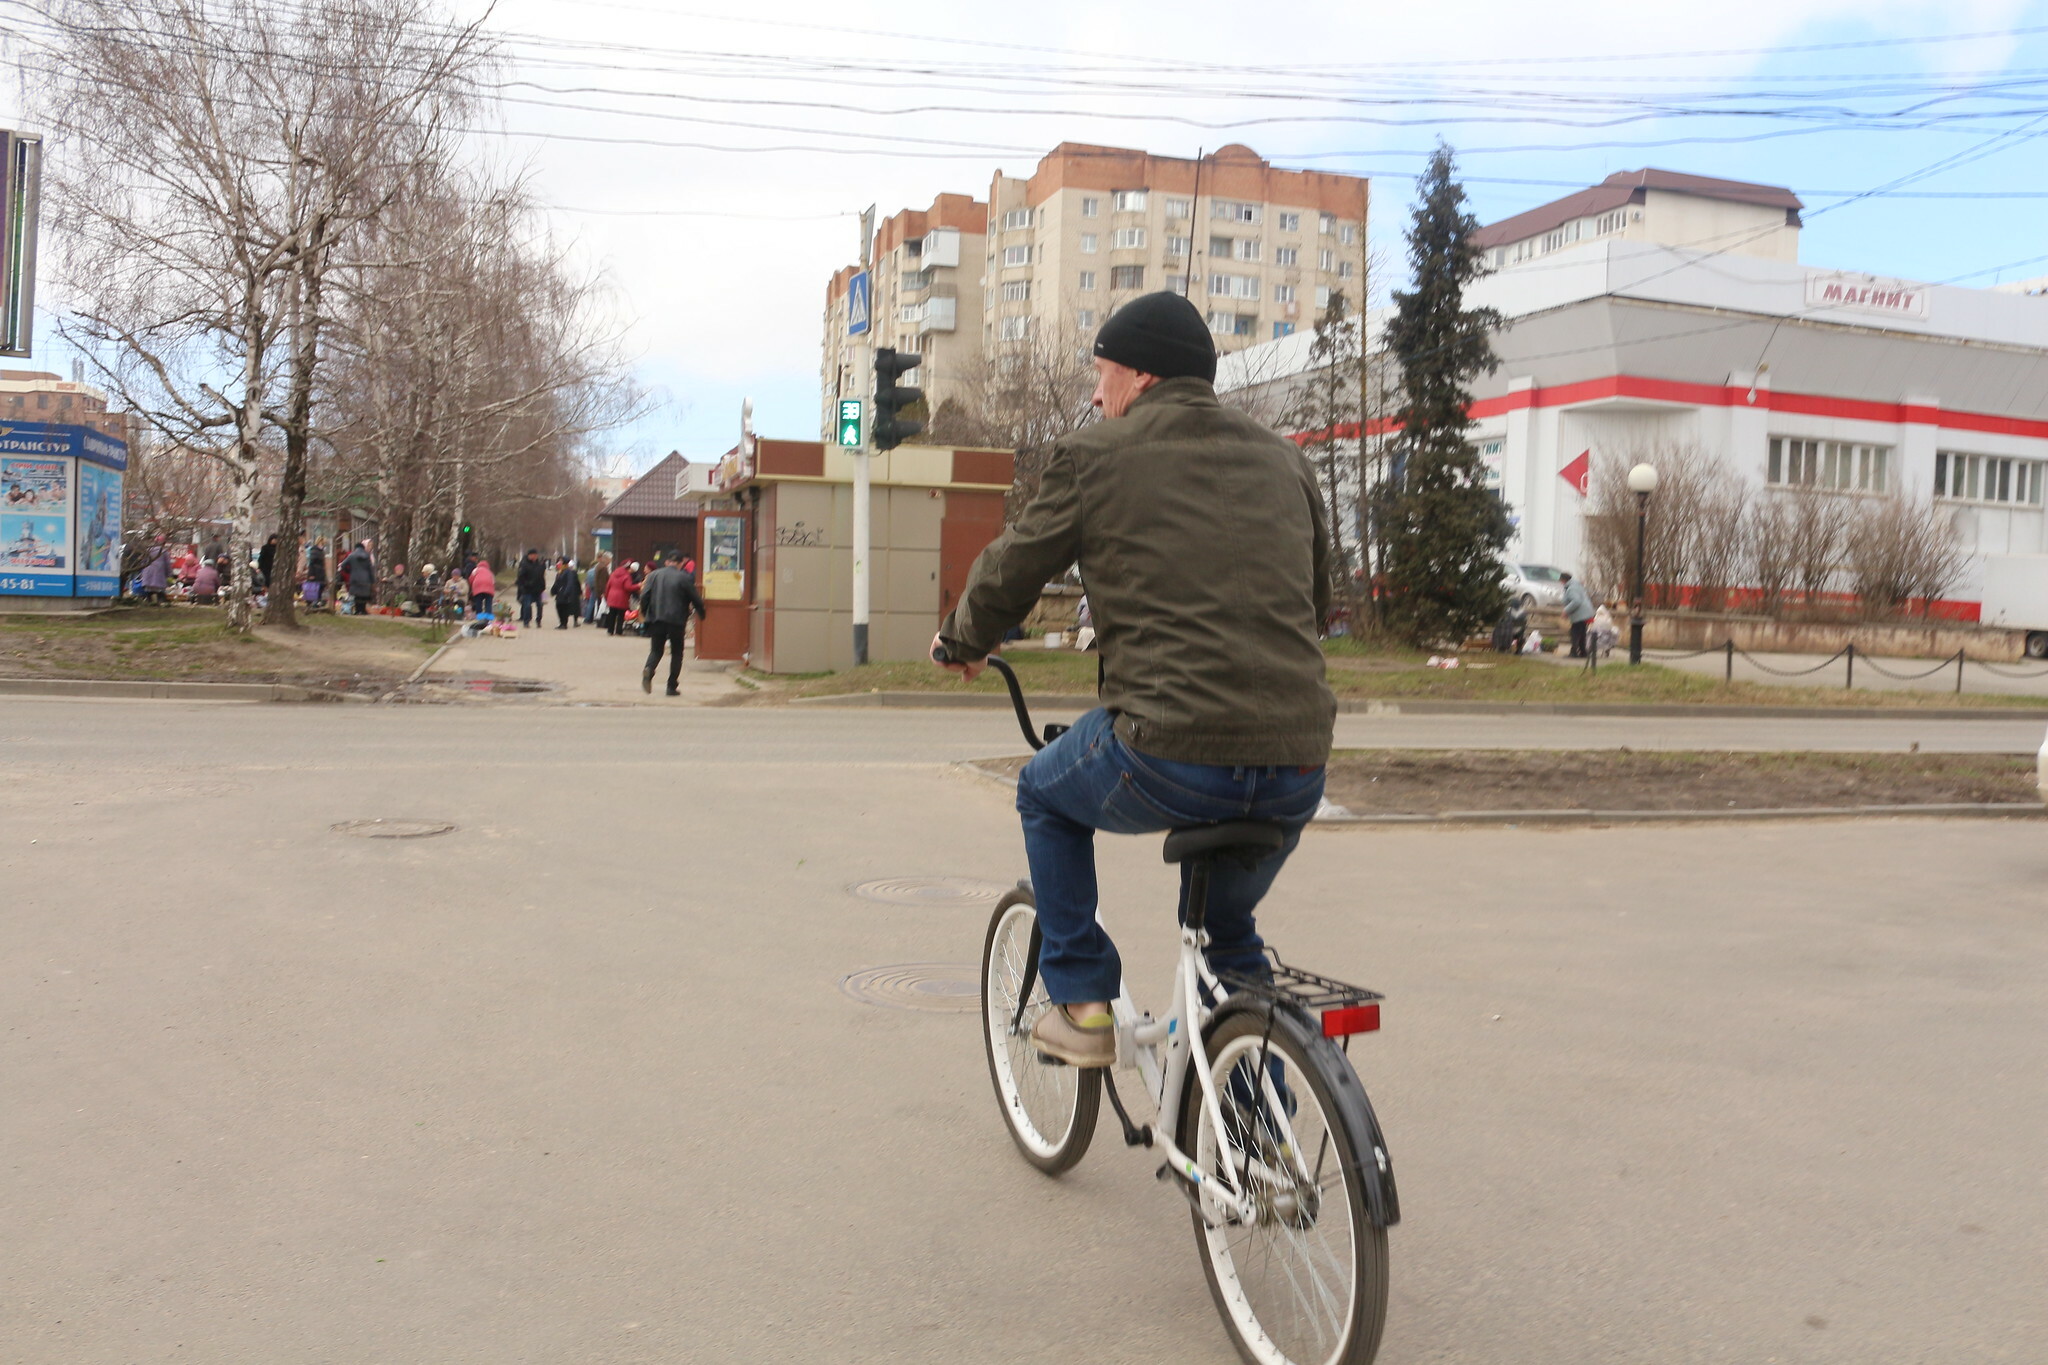 Найти в Ставрополе неизведанные места поможет квест-игра "Мой город"